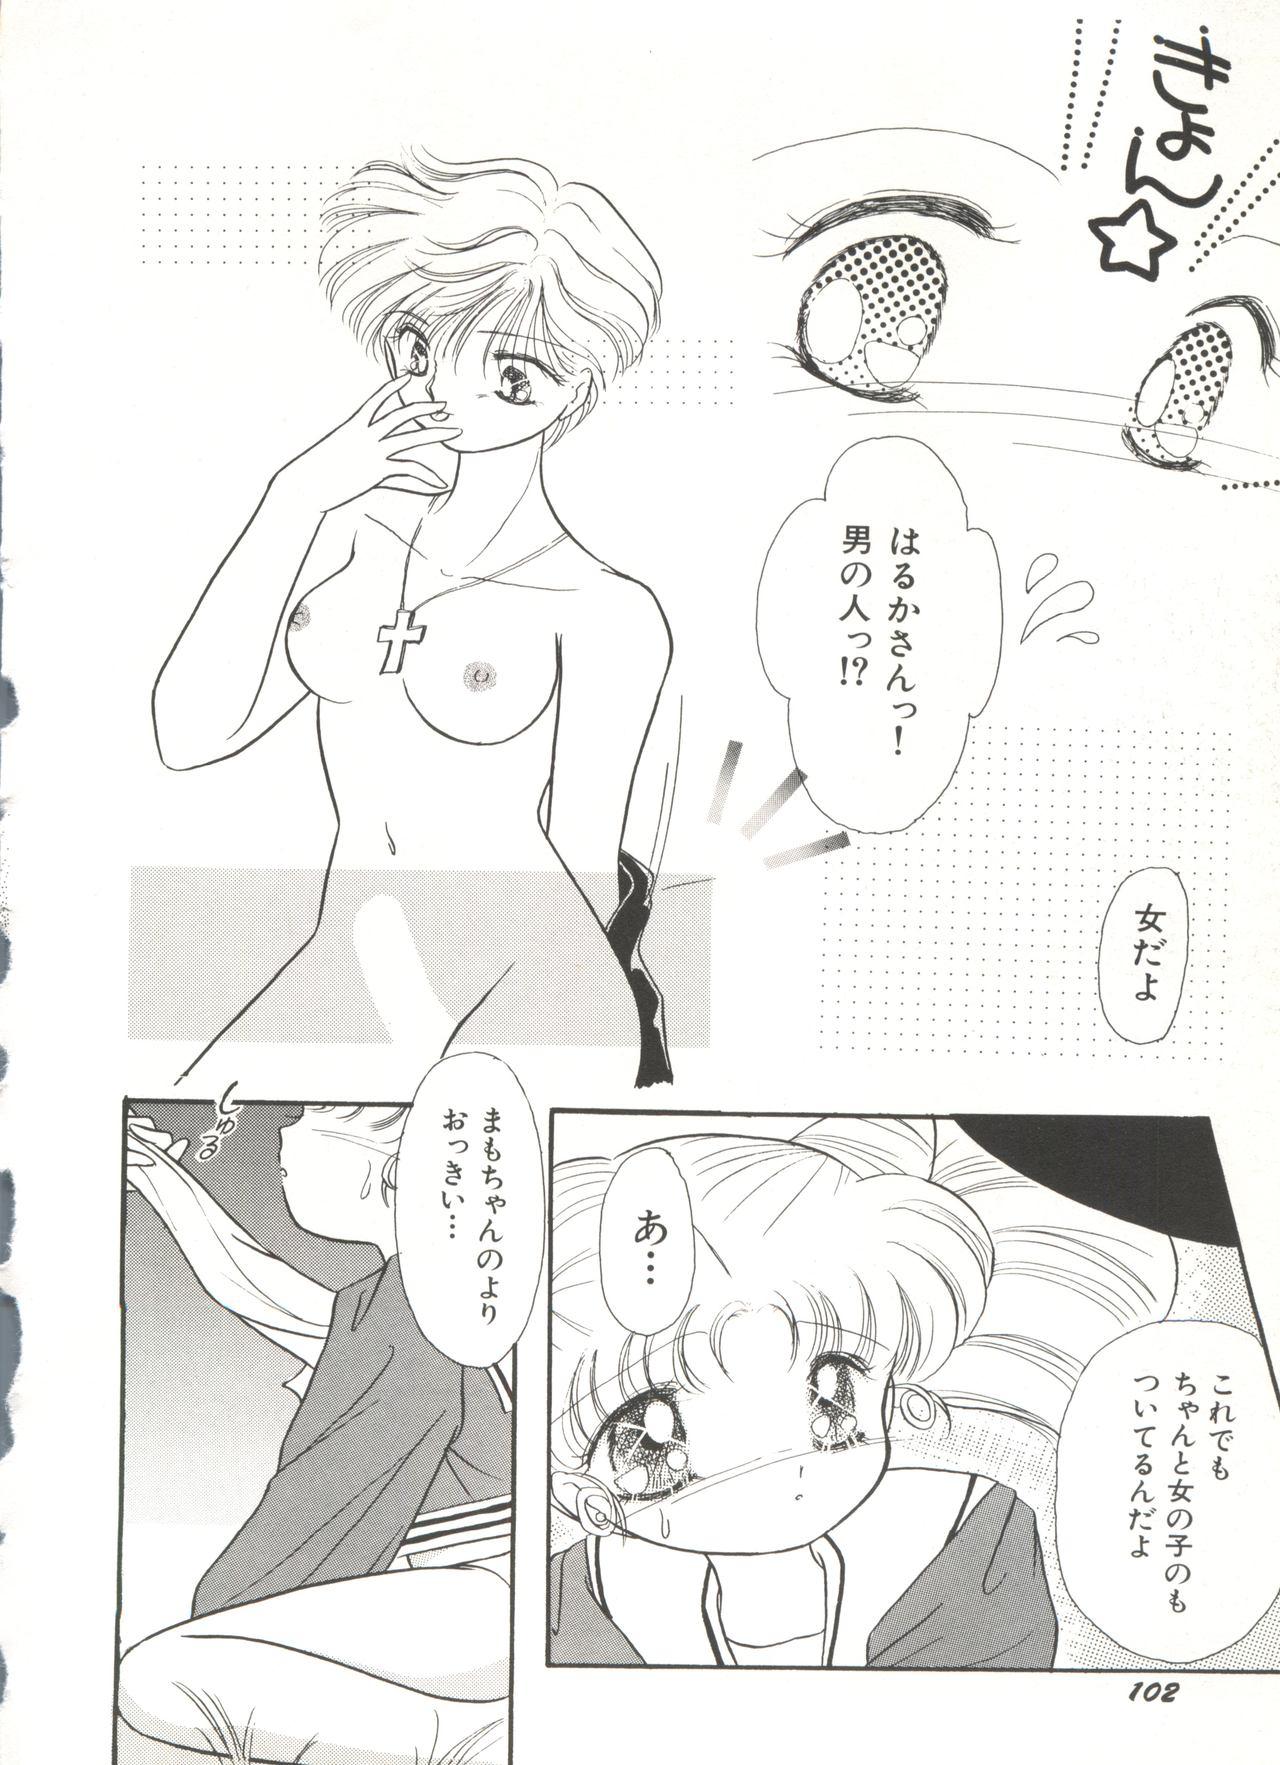 Bishoujo Doujinshi Anthology 16 - Moon Paradise 10 Tsuki no Rakuen 106